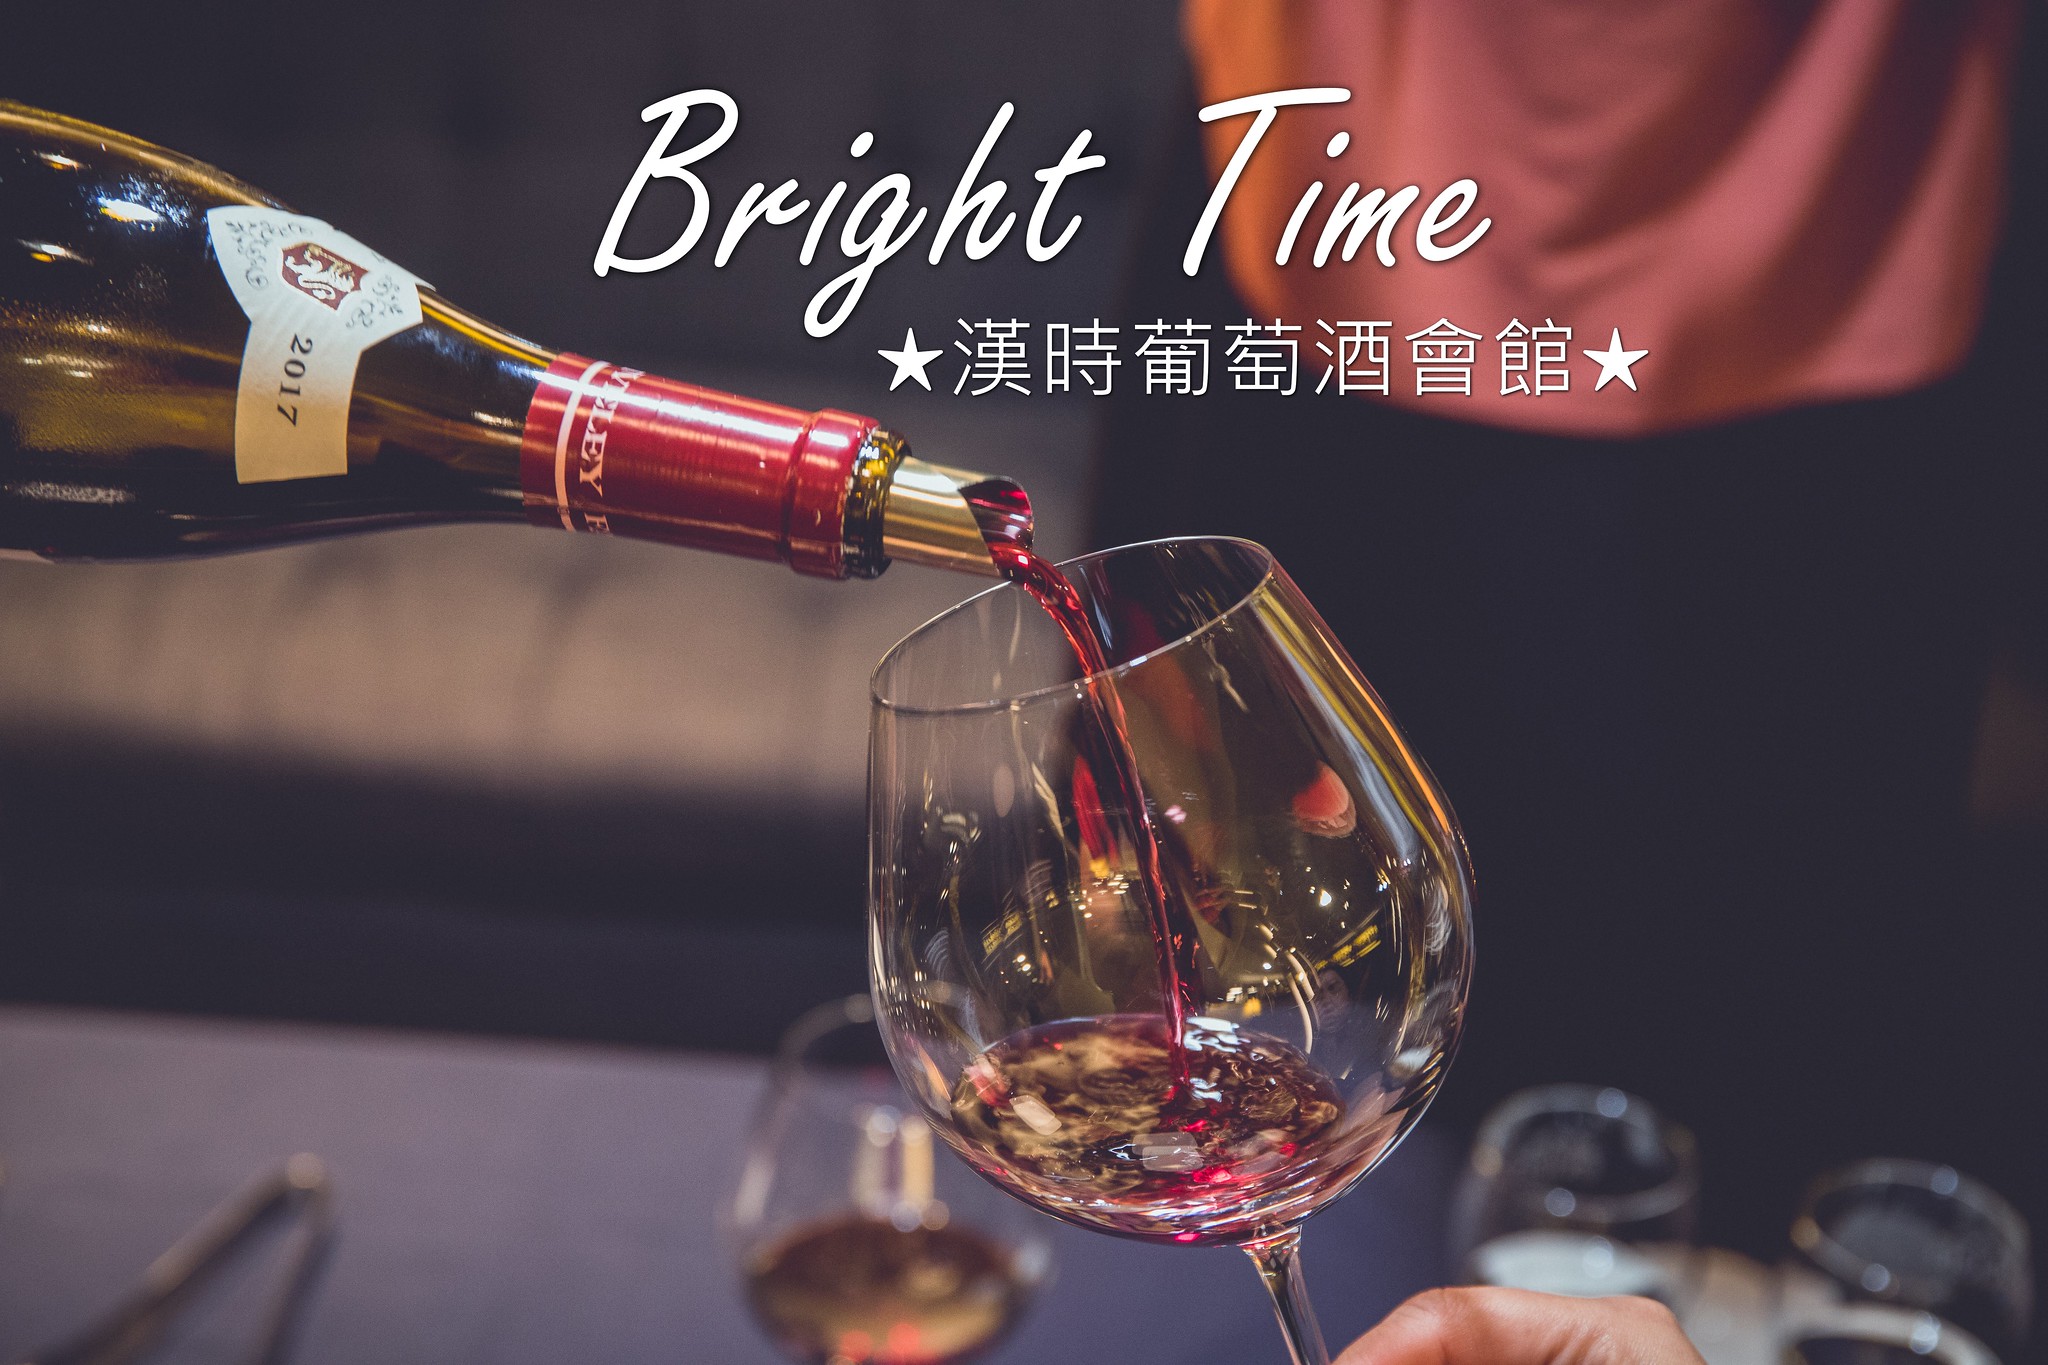 台南．北區．Bright Time．漢時葡萄酒會館．輕鬆跟朋友小酌的漢時品樂會．以酒佐書的品酩活動。